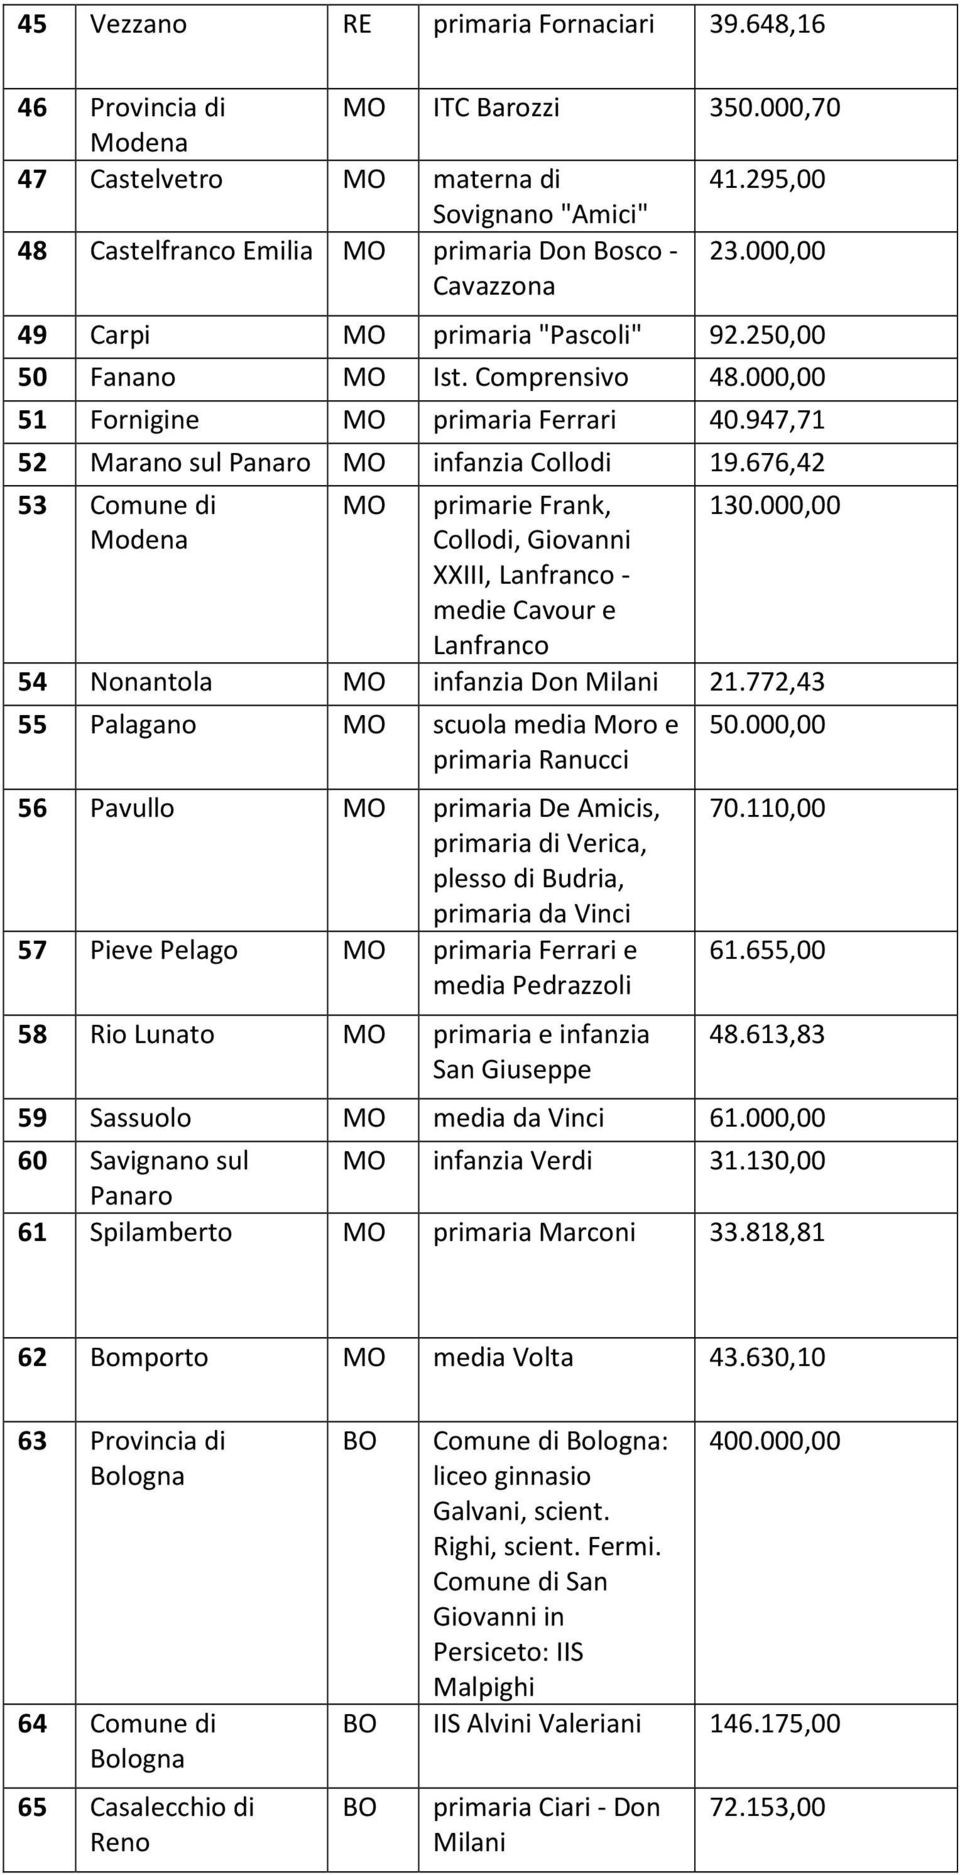 676,42 53 Comune di Modena MO primarie Frank, Collodi, Giovanni XXIII, Lanfranco - medie Cavour e Lanfranco 130.000,00 54 Nonantola MO infanzia Don Milani 21.